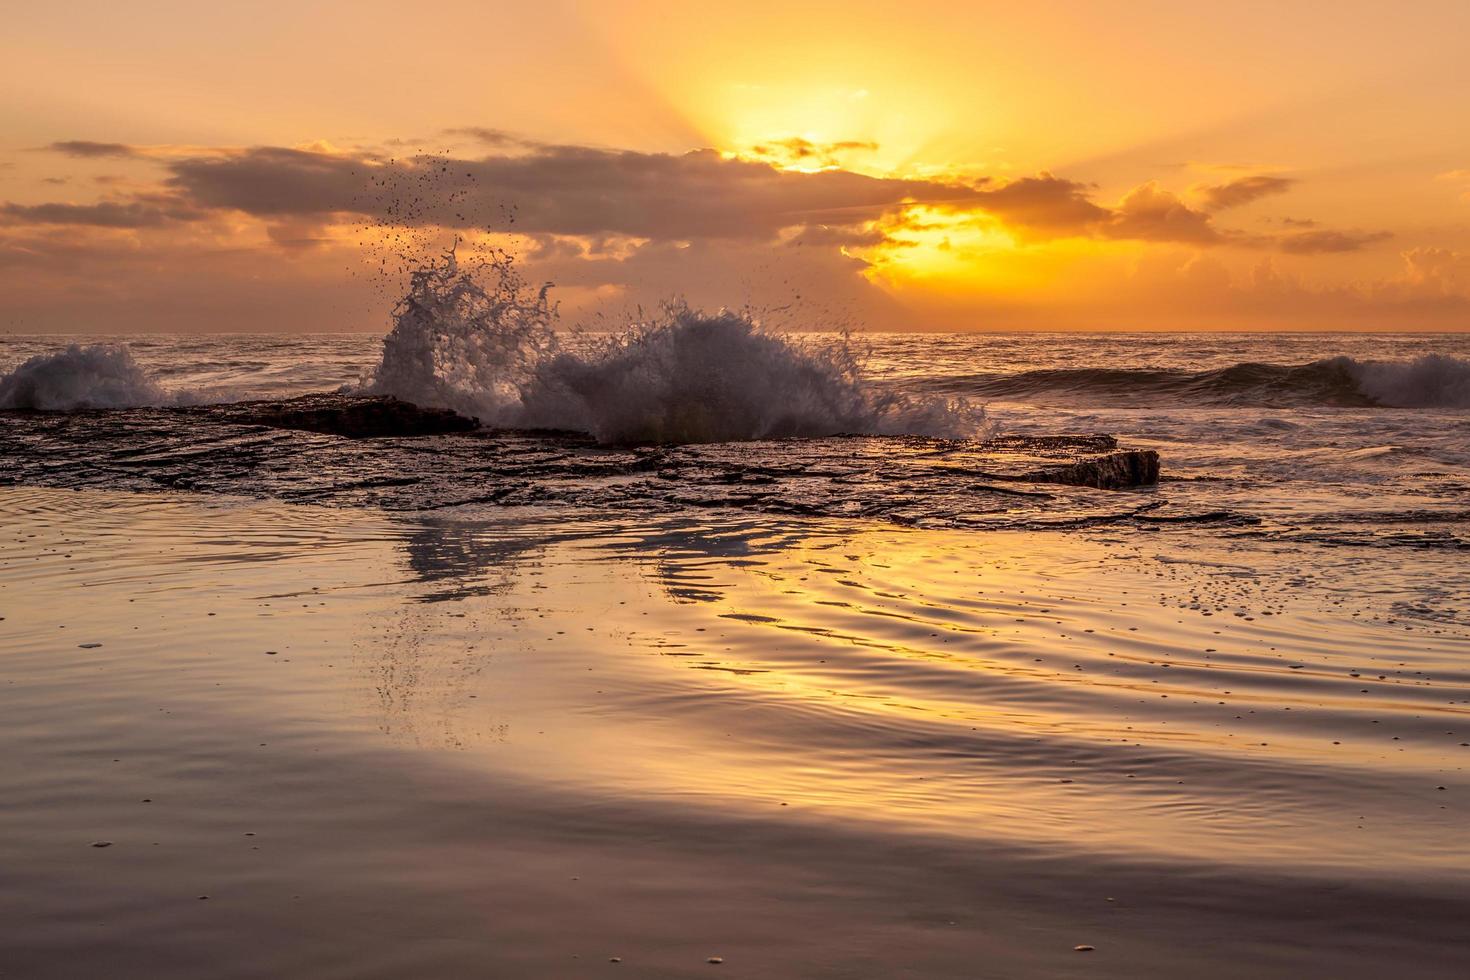 Ocean waves crashing on shore during sunset photo